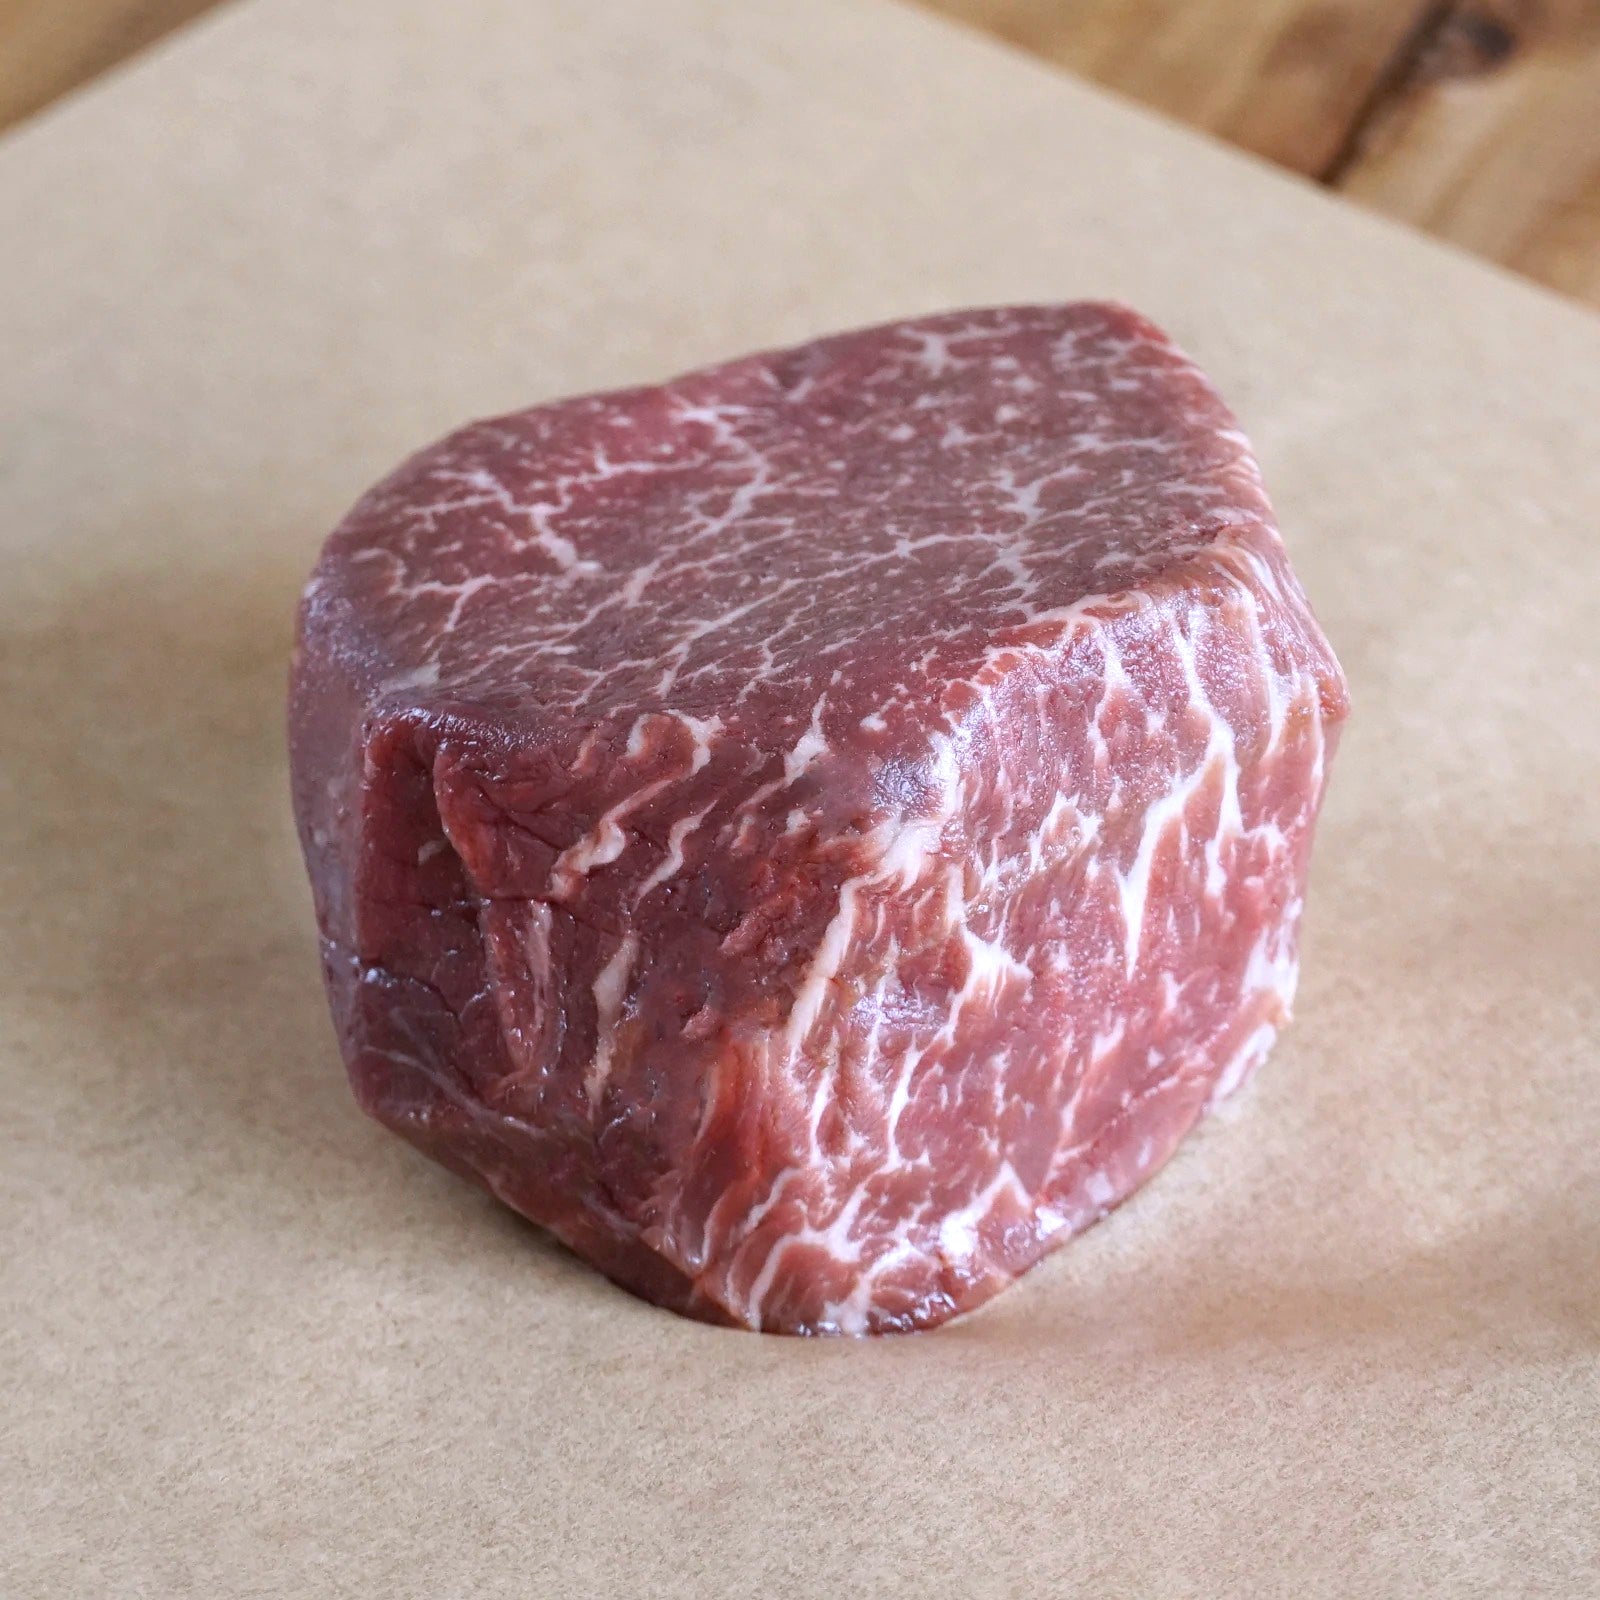 Variety Set of Premium Grain-Fed Beef MB5+ Steaks (3 Types, 18 Steaks, 4.2kg) - Horizon Farms